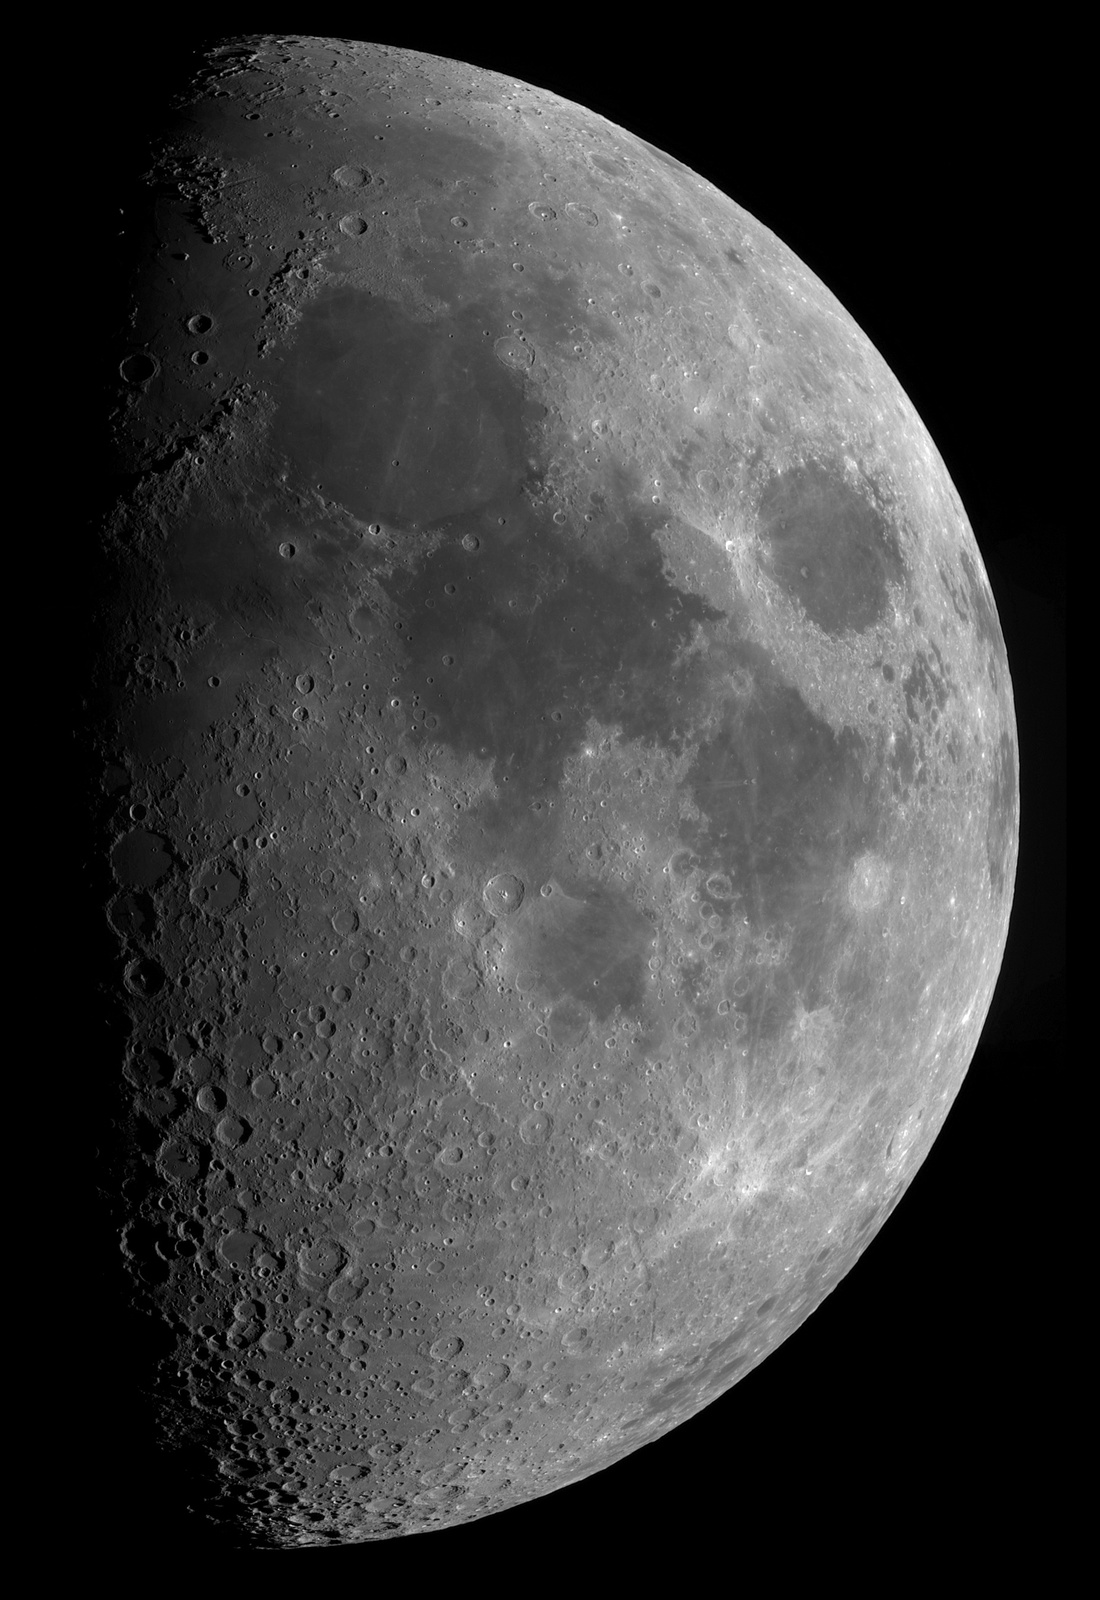 Księżyc 1d po pierwszej kwadrze_8.08.2019r_20.30_TS152F900_ASI290MM_Omegon Halpha 12nm_mozaika90%....jpg